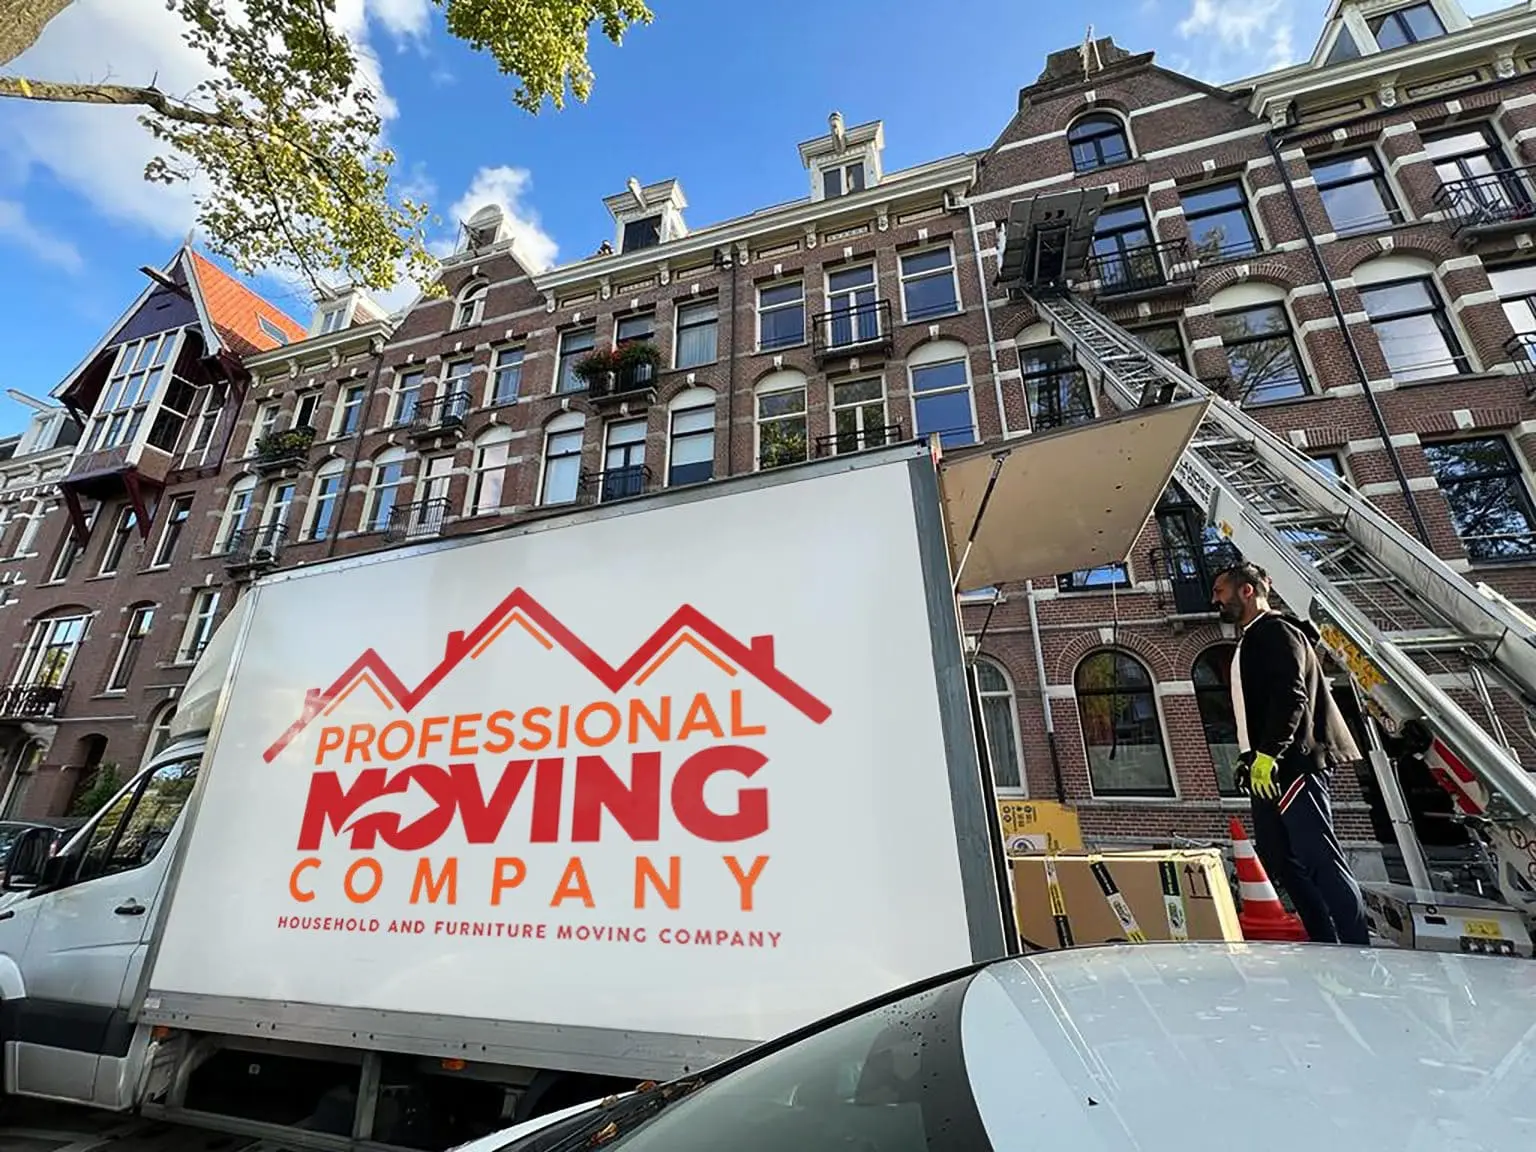 Kiezen voor Verhuisbedrijf Hoorn: Uw Vertrouwde Partner in Hoorn | verhuisbedrijf Hoorn